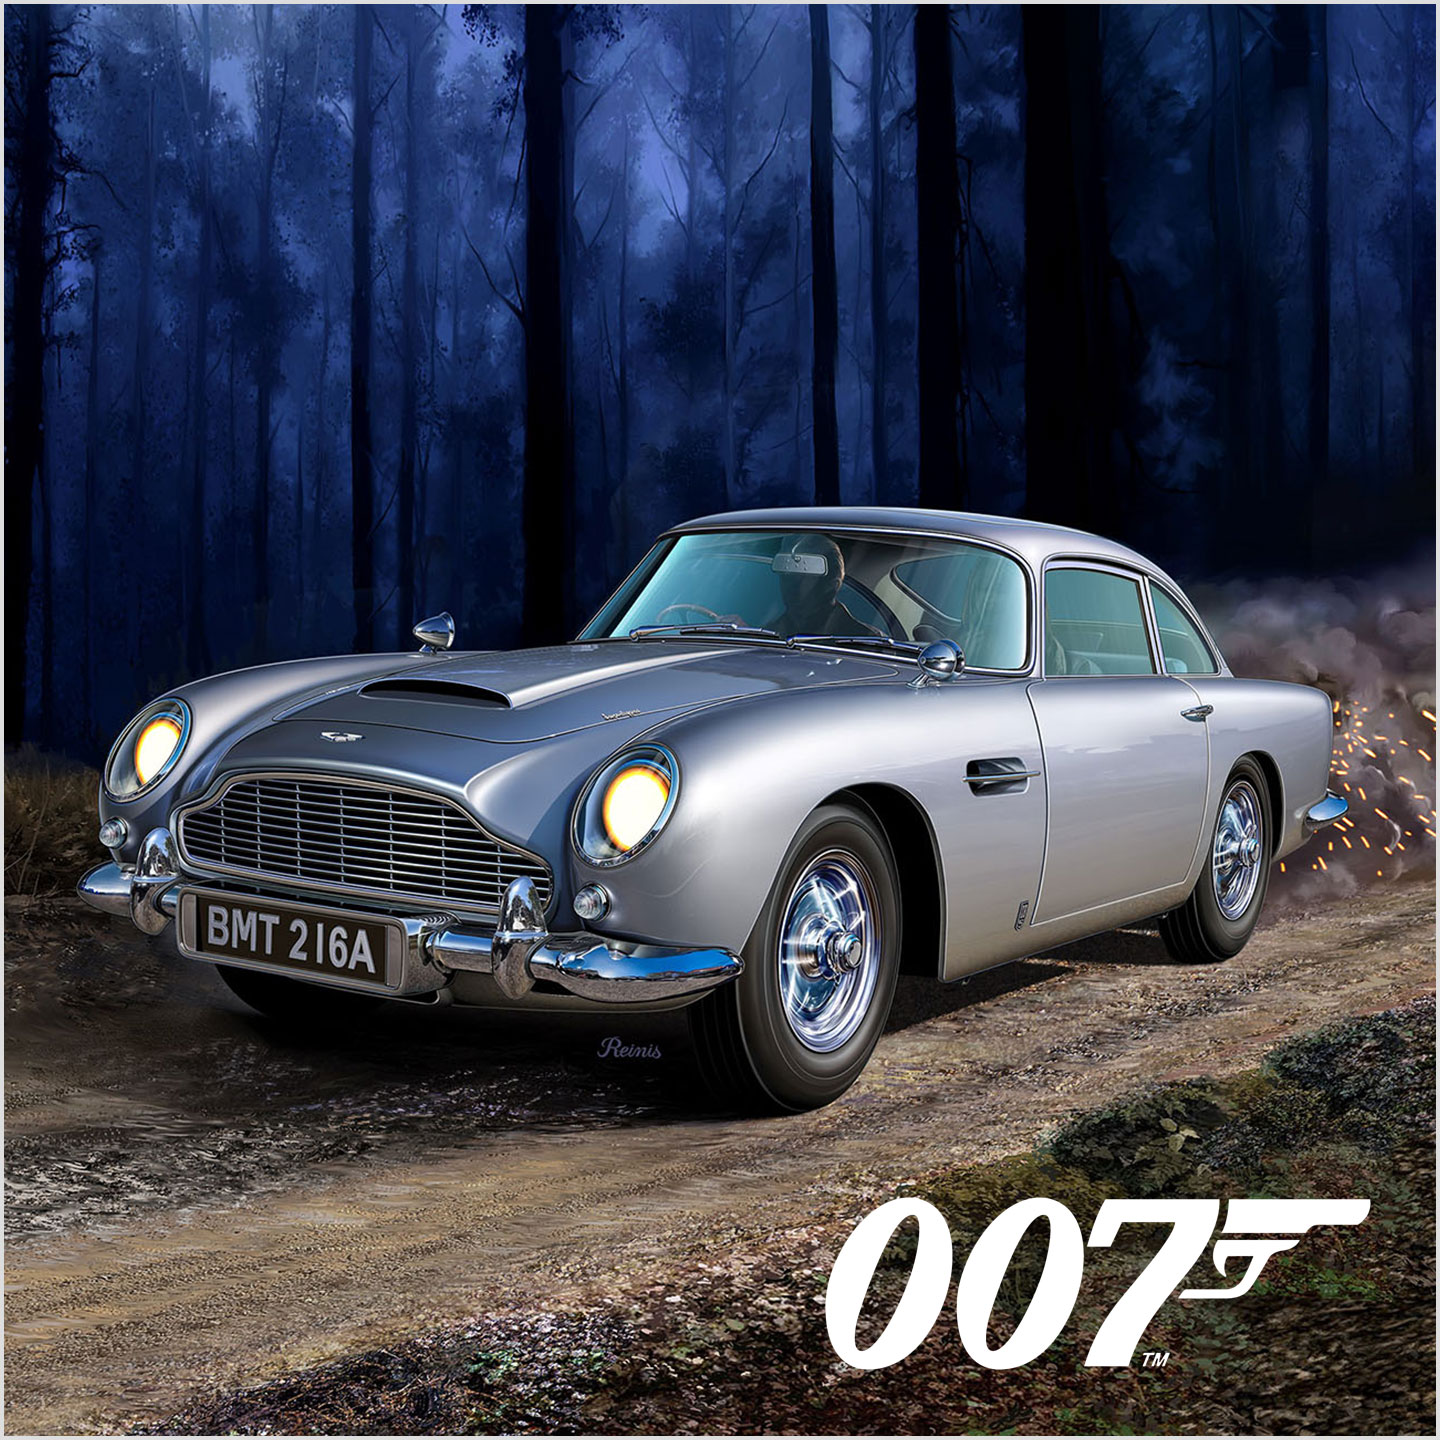 Revell Modellbau James Bond 007